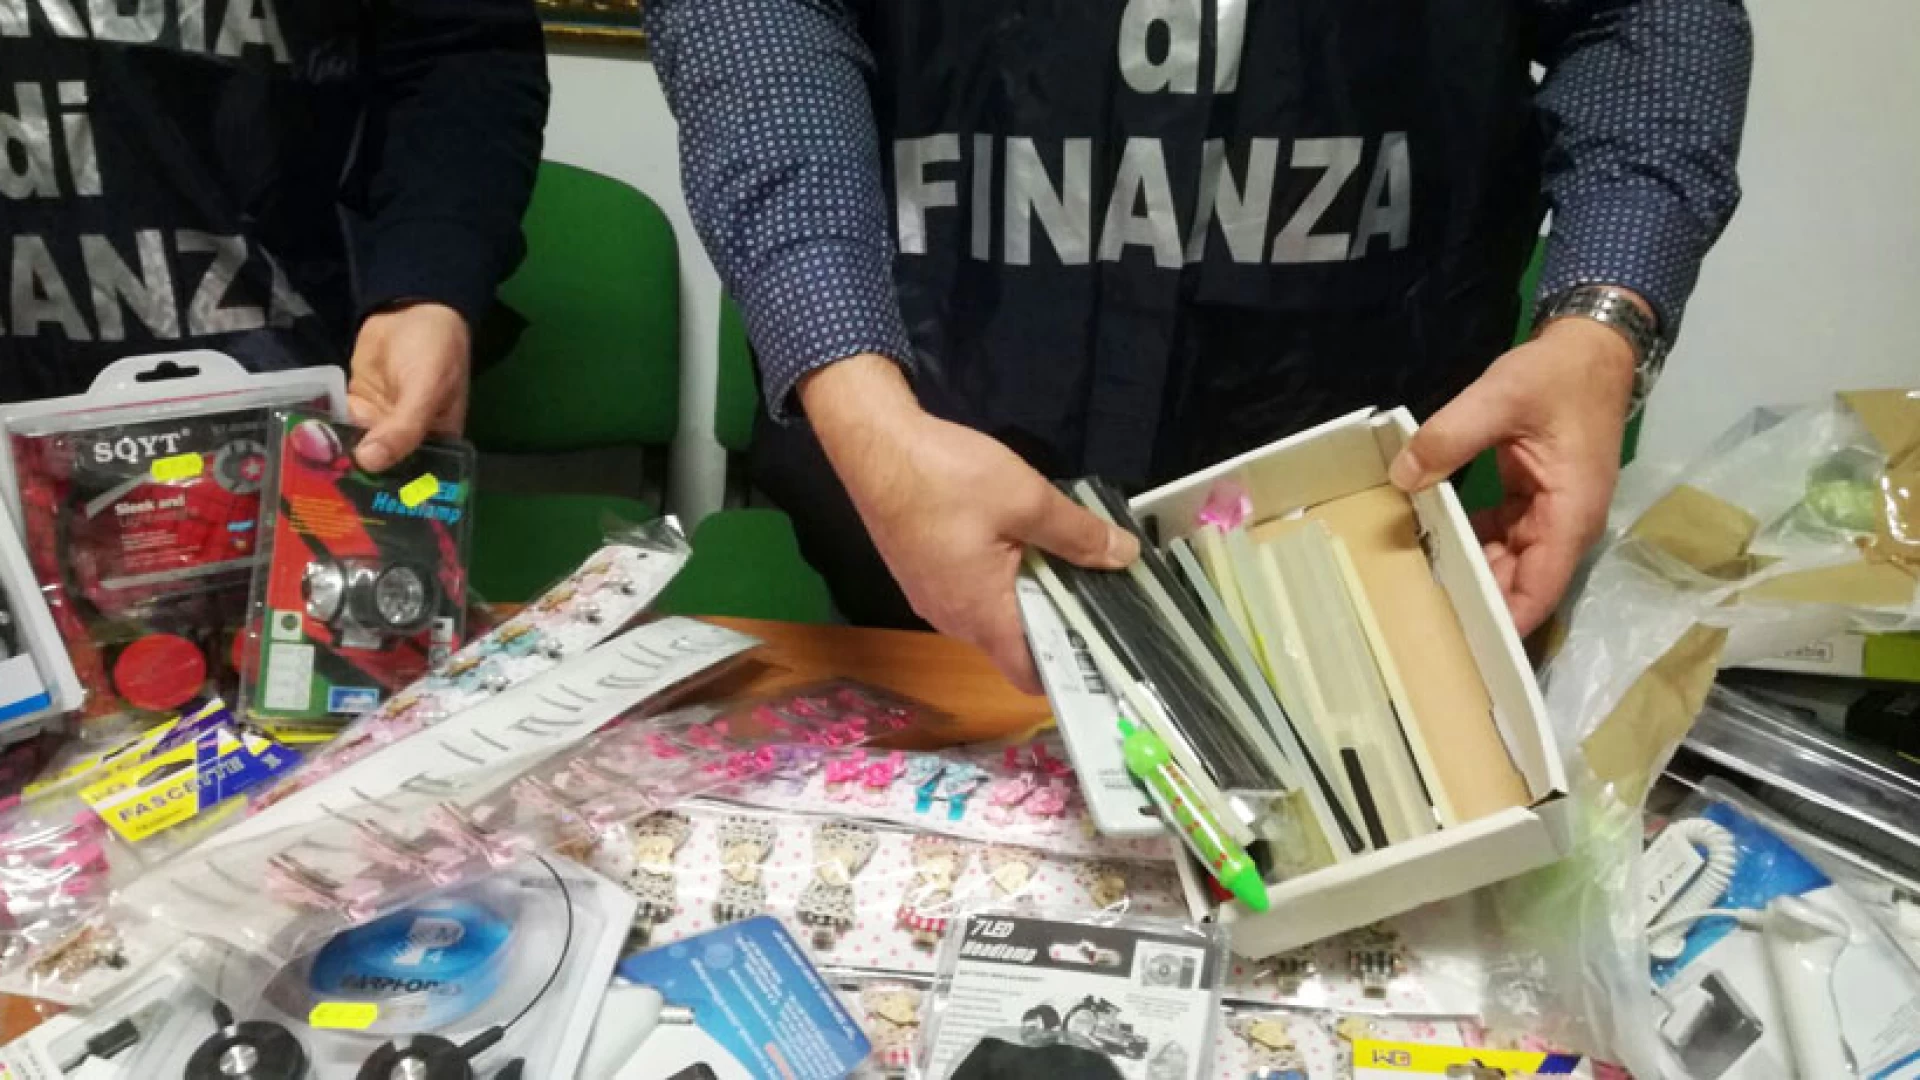 La Guardia di Finanza di Termoli sequestra oltre tremila articoli di cancelleria non sicuri.